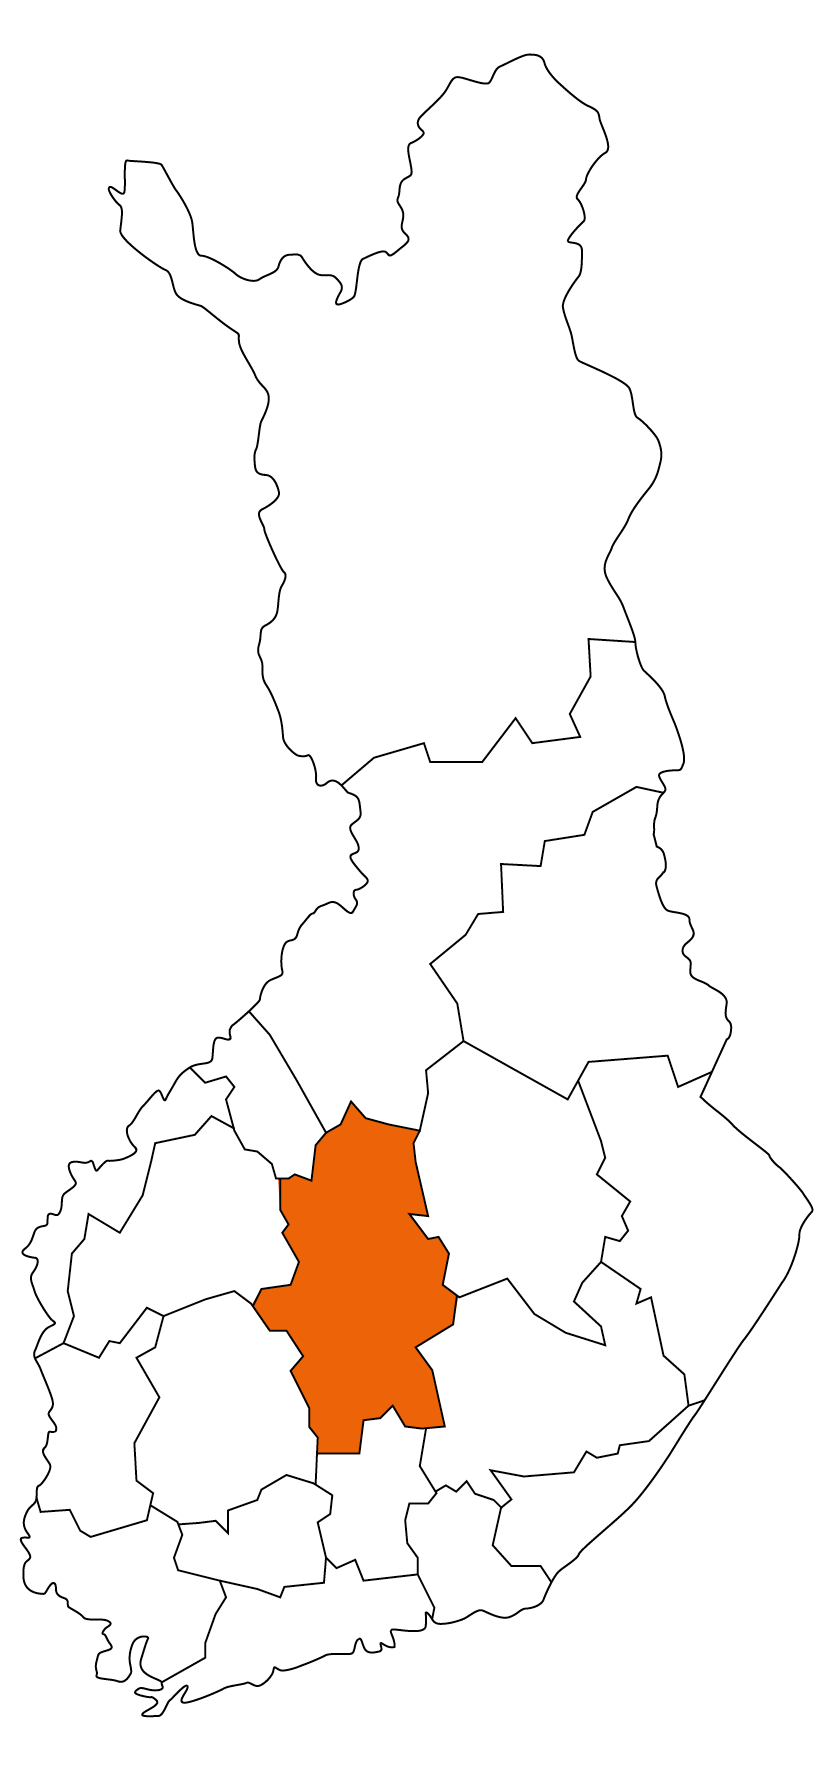 Keski-Suomi